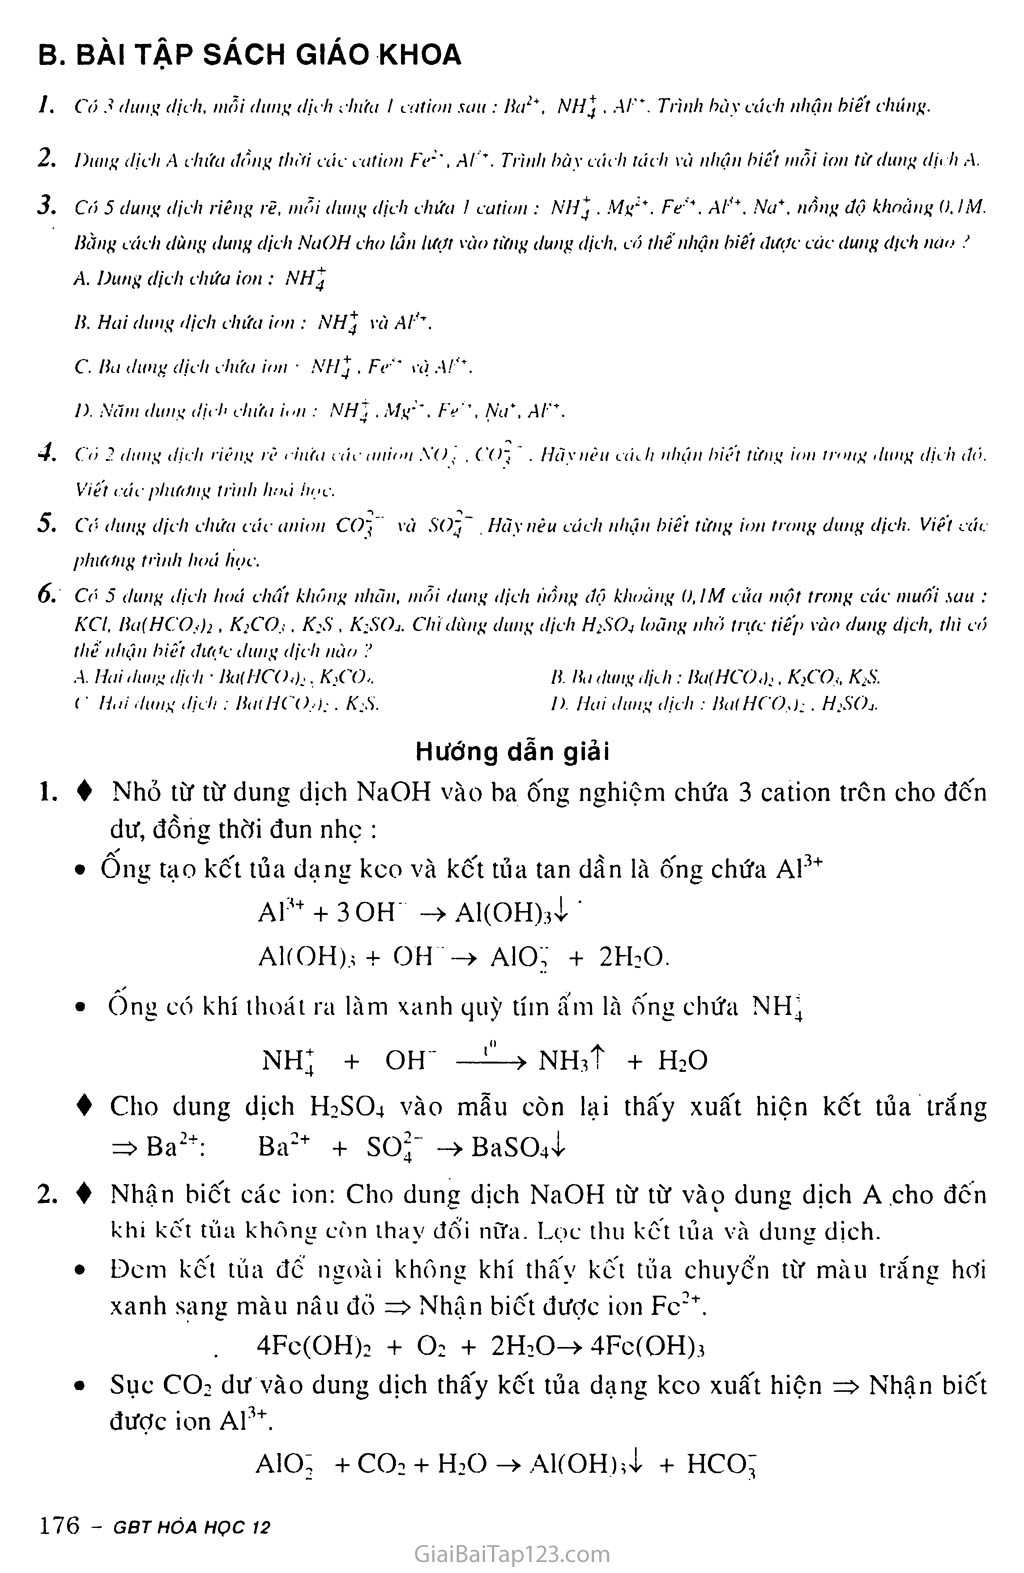 Bài 40: Nhận biết một số ion trong dunng dịch trang 4